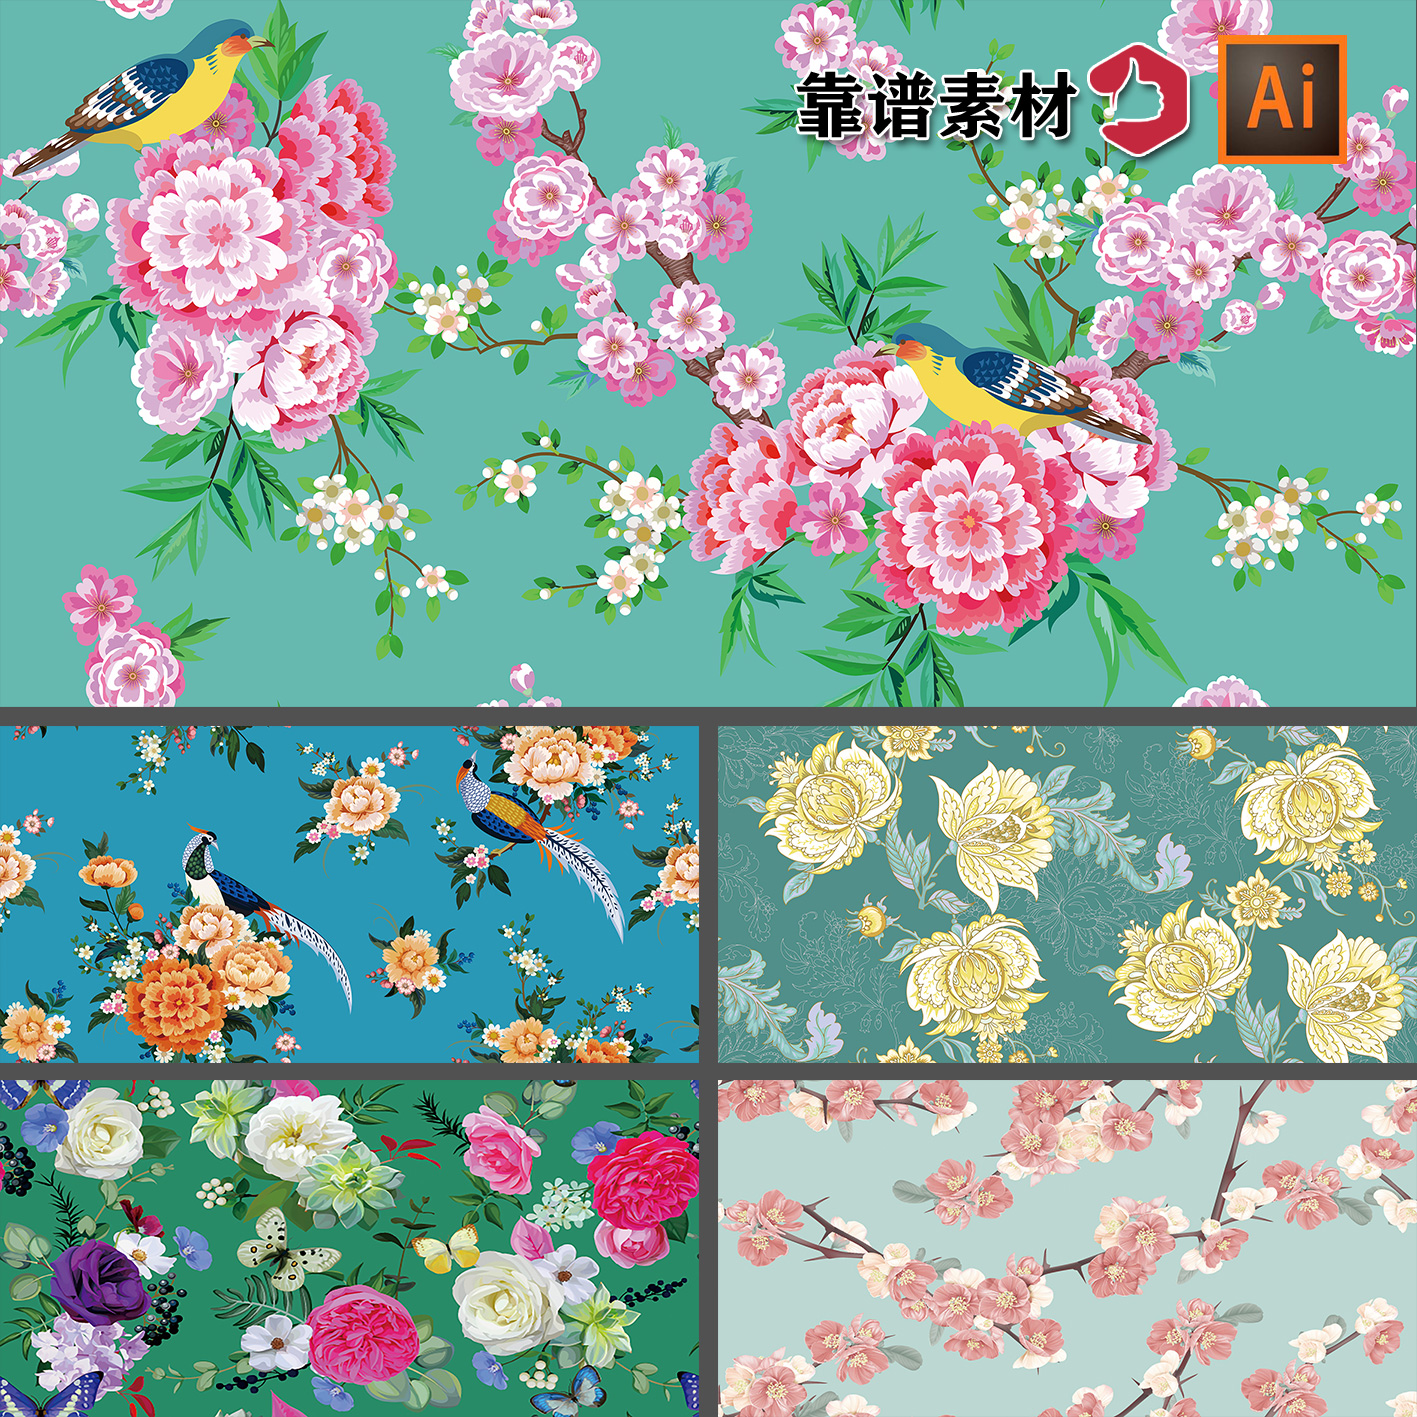 中国风富贵牡丹花鸟仙鹤服饰墙纸地毯印花图案AI矢量设计素材